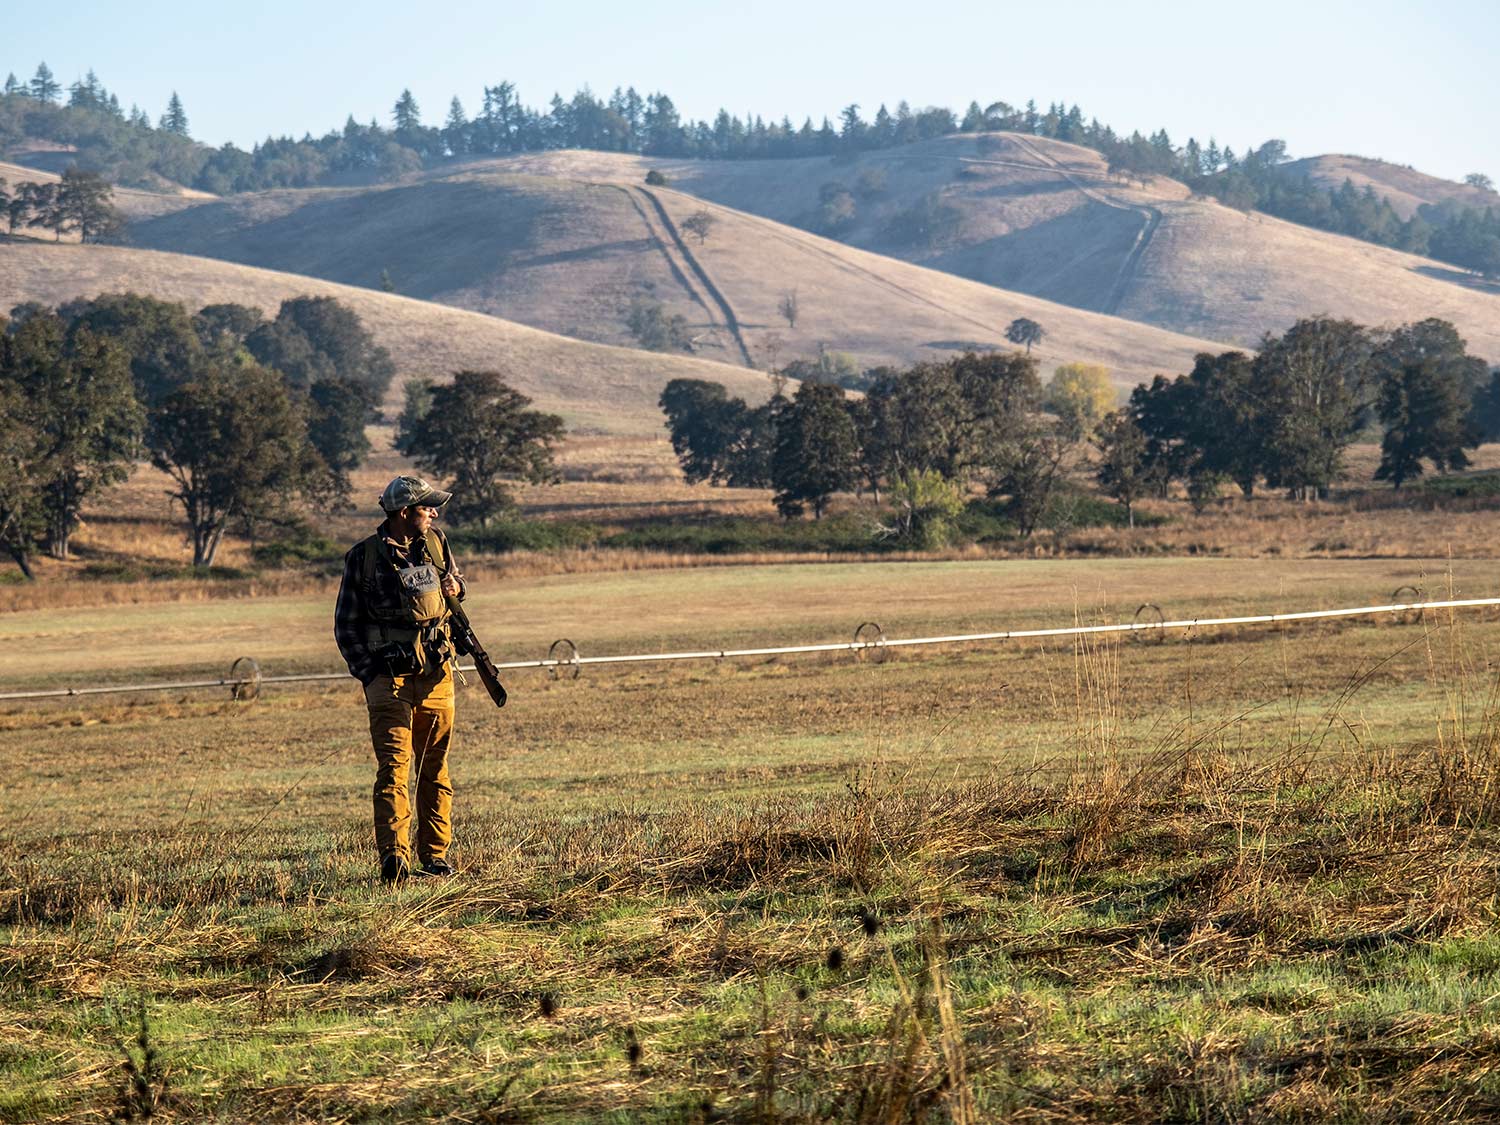 A hunter walks through a large open field.